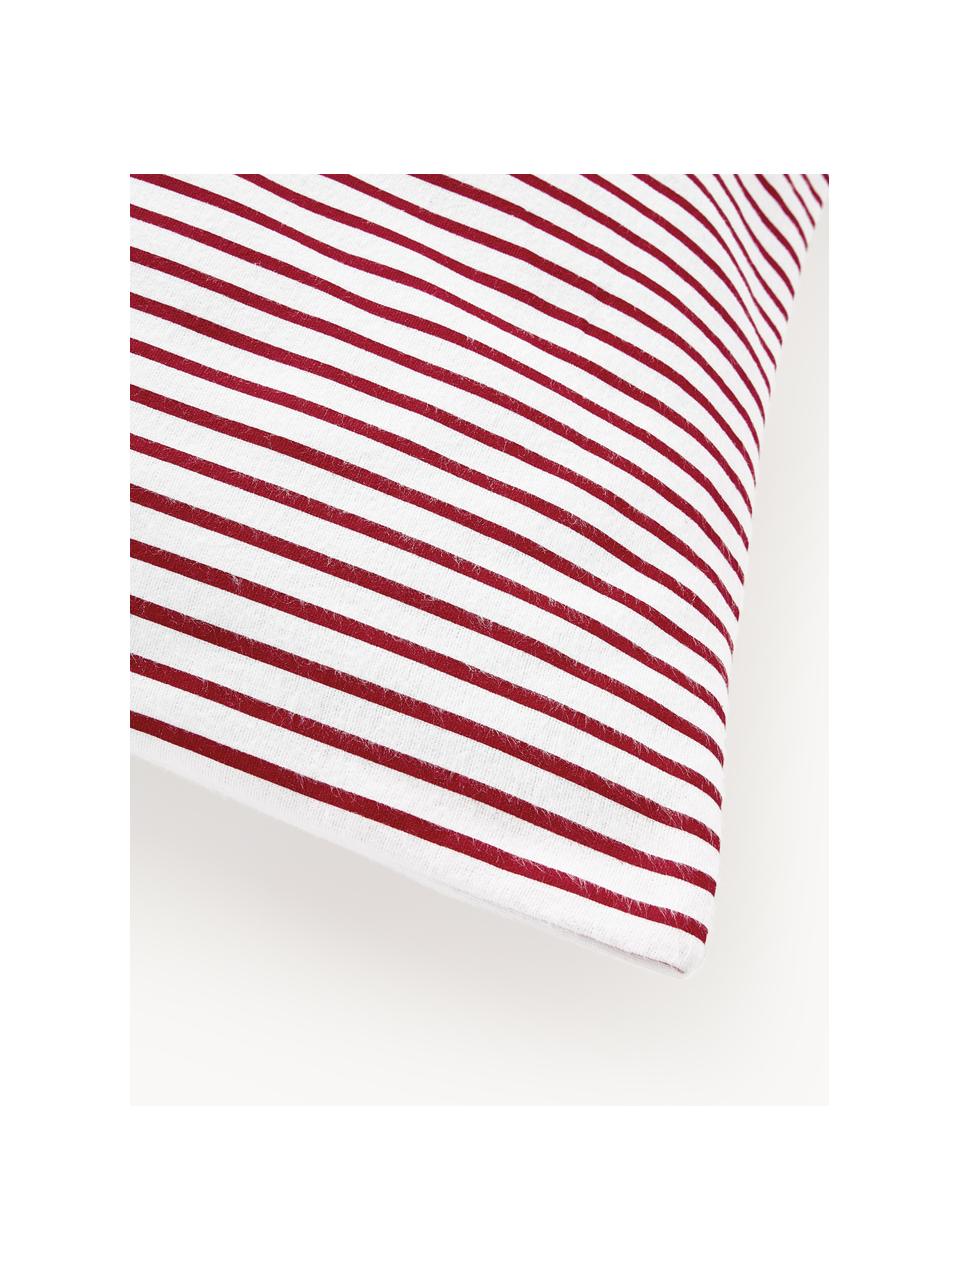 Taie d'oreiller réversible en flanelle motif casse-noisette Noan, Rouge, blanc, larg. 50 x long. 70 cm